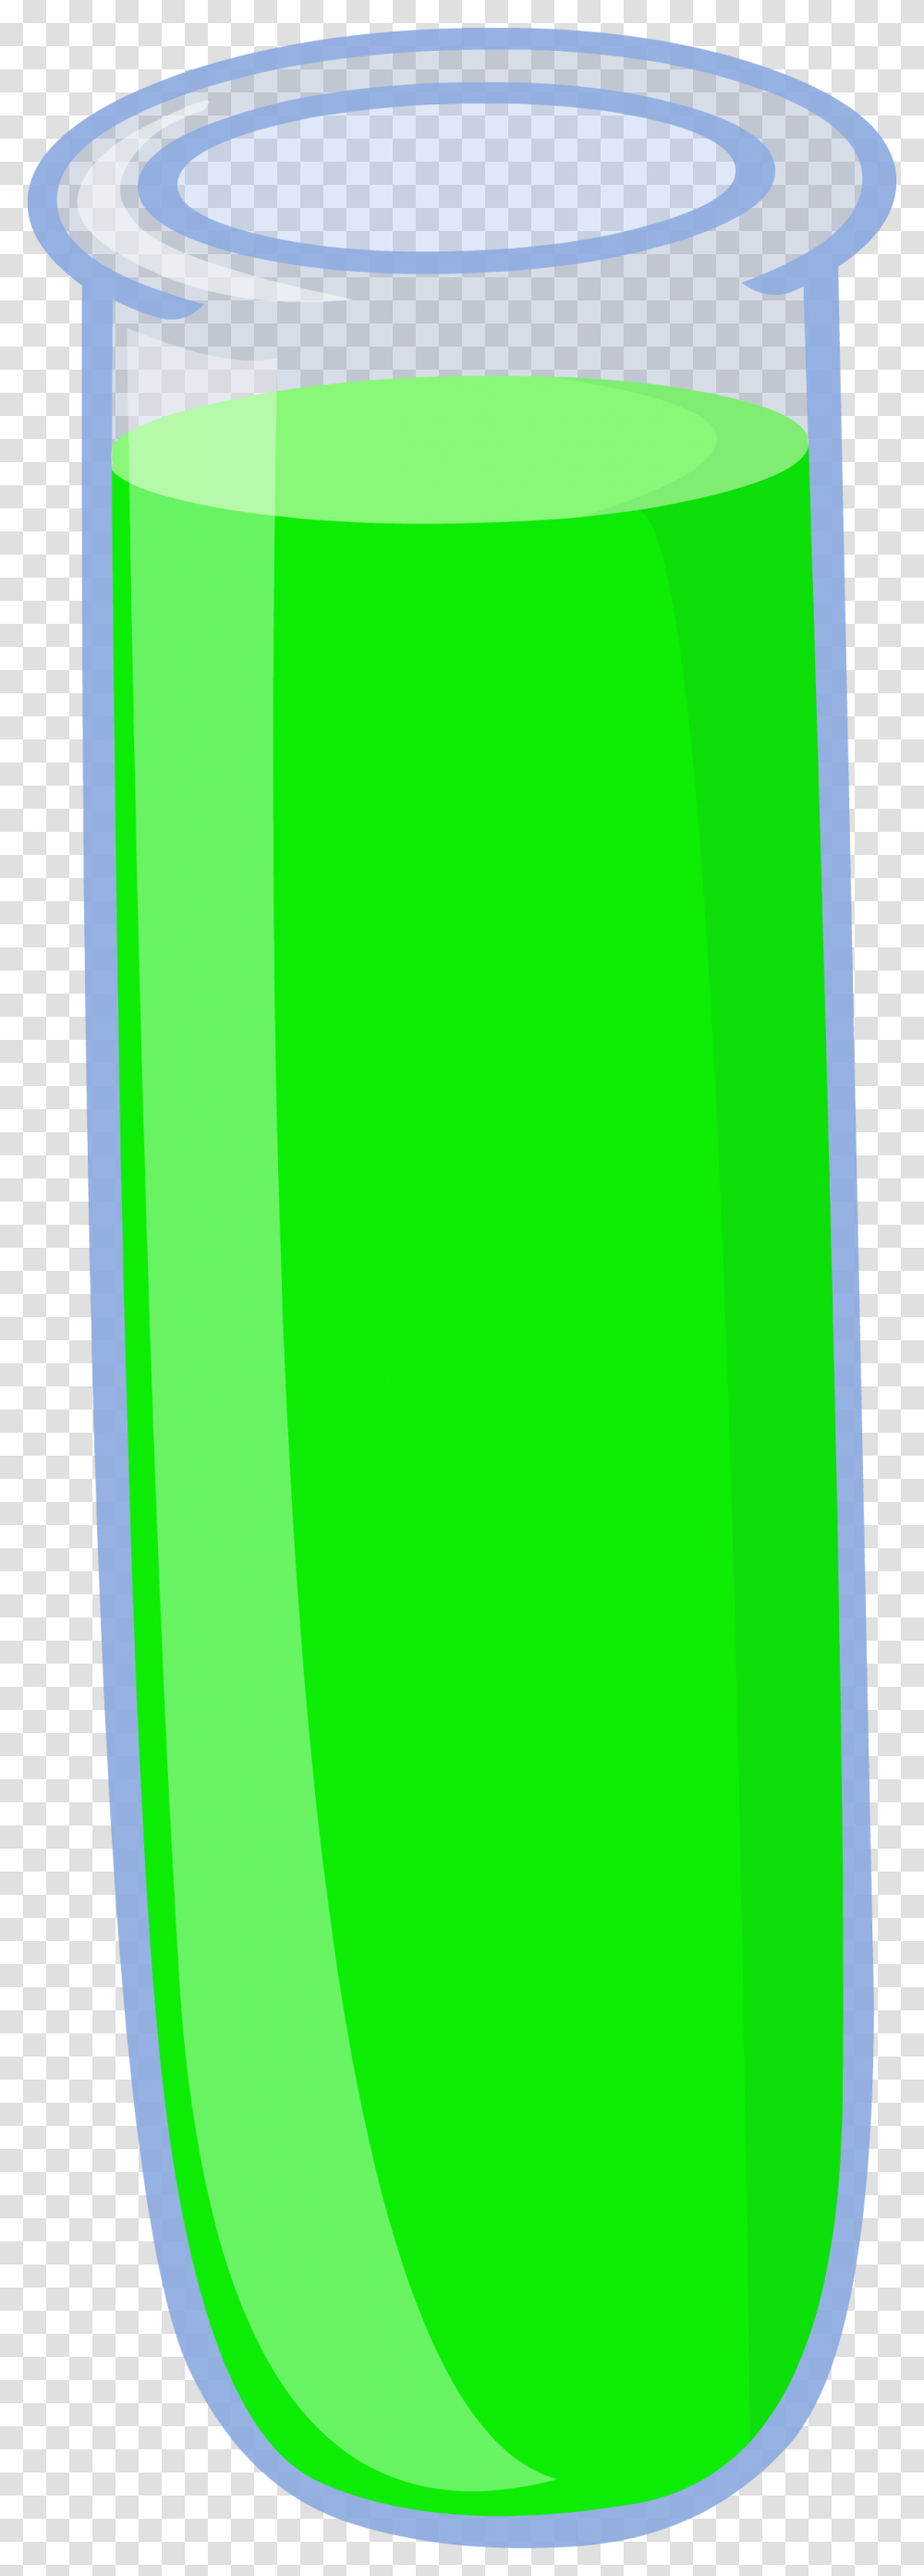 Green Clipart Test Tube Green Test Tube, Bottle, Beverage, Pop Bottle Transparent Png